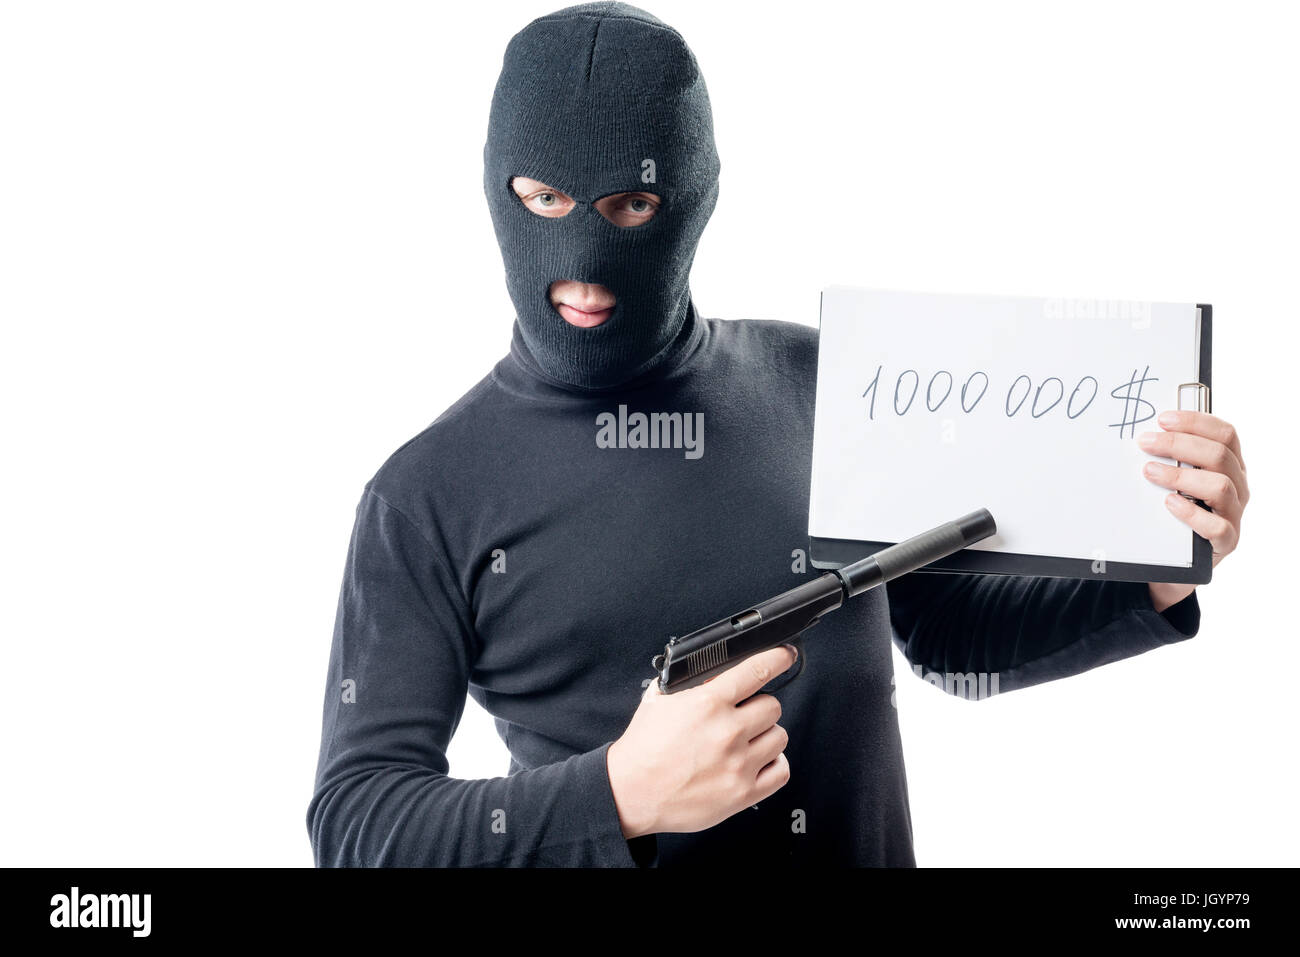 Ein Verbrecher mit einer Pistole verlangt eine Lösegeld von $ 1000000 Stockfoto